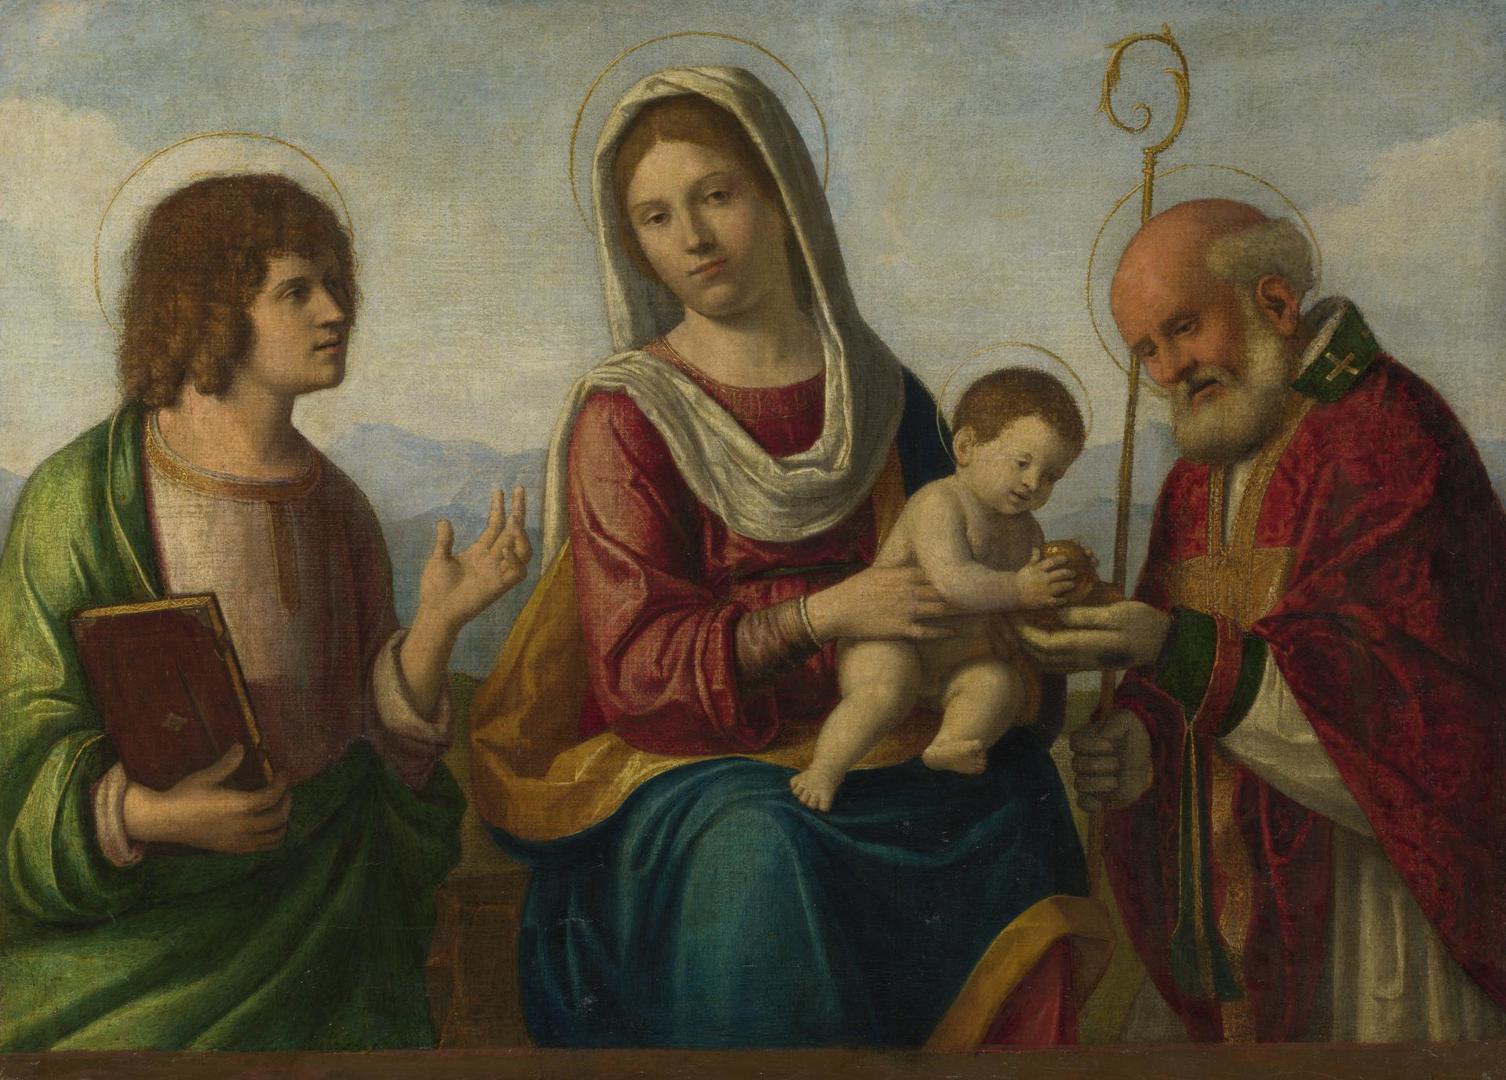 The Virgin and Child with Saints by Probably by Giovanni Battista Cima da Conegliano